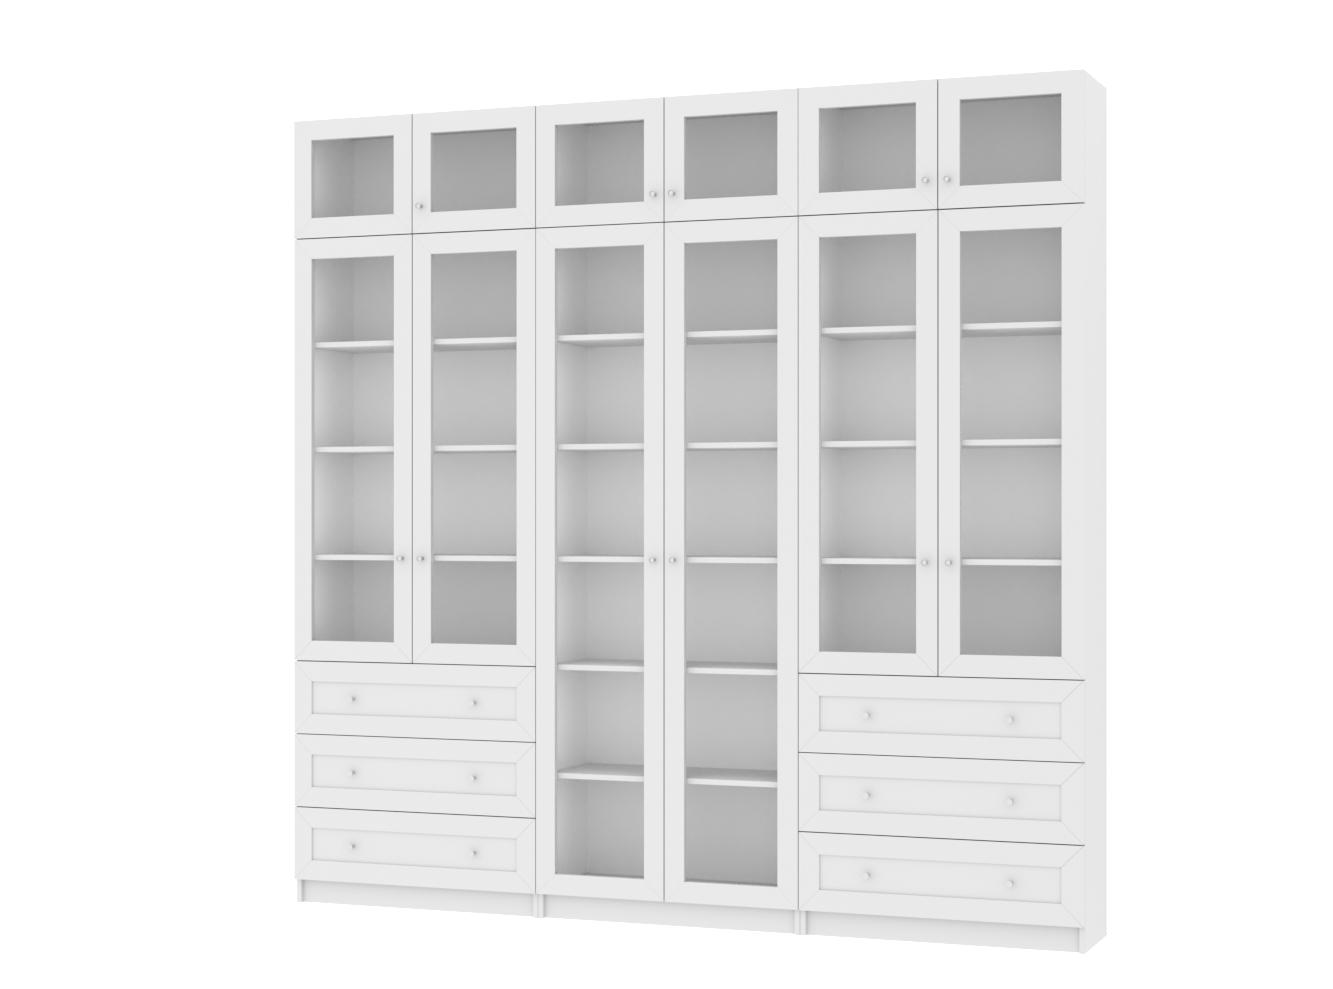 Изображение товара Книжный шкаф Билли 54 white ИКЕА (IKEA), 240x30x237 см на сайте adeta.ru